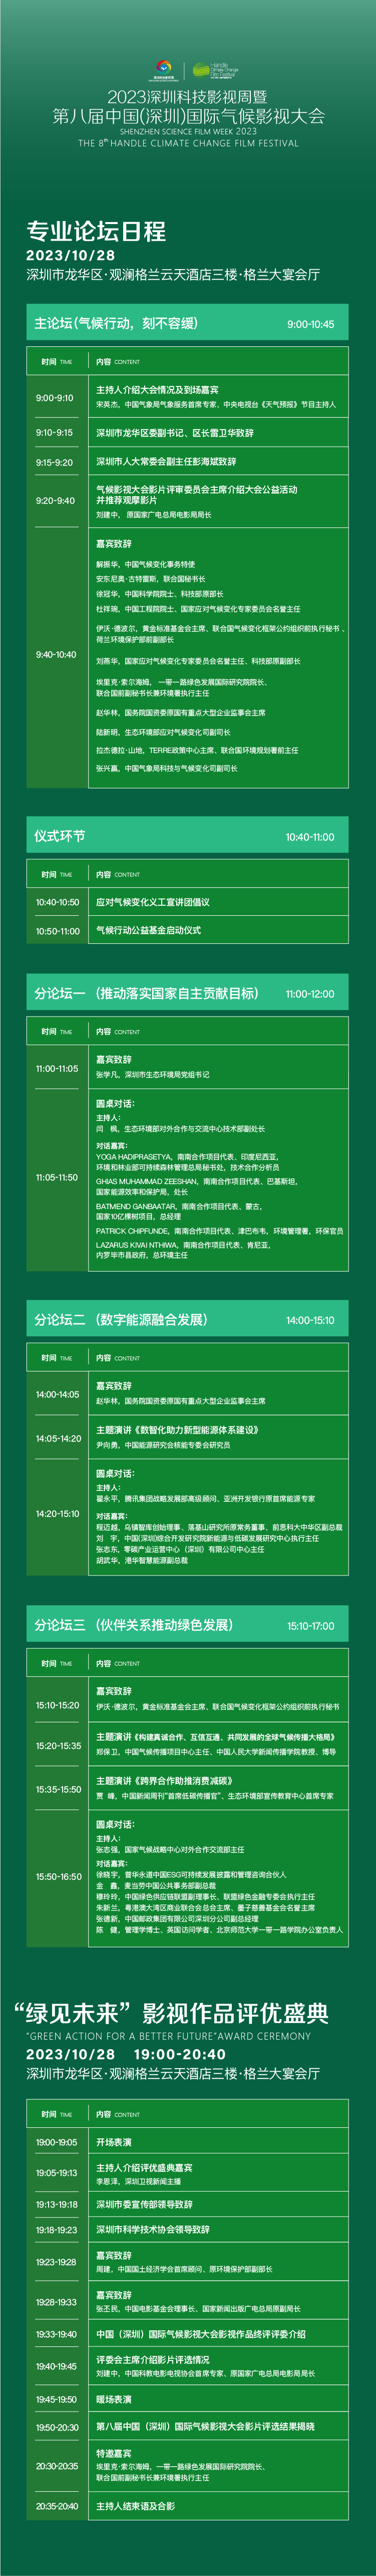 活动议程丨第八届中国（深圳）国际气候影视大会_fororder_1CDD492A-1544-4B8F-A079-BAF7324B1243